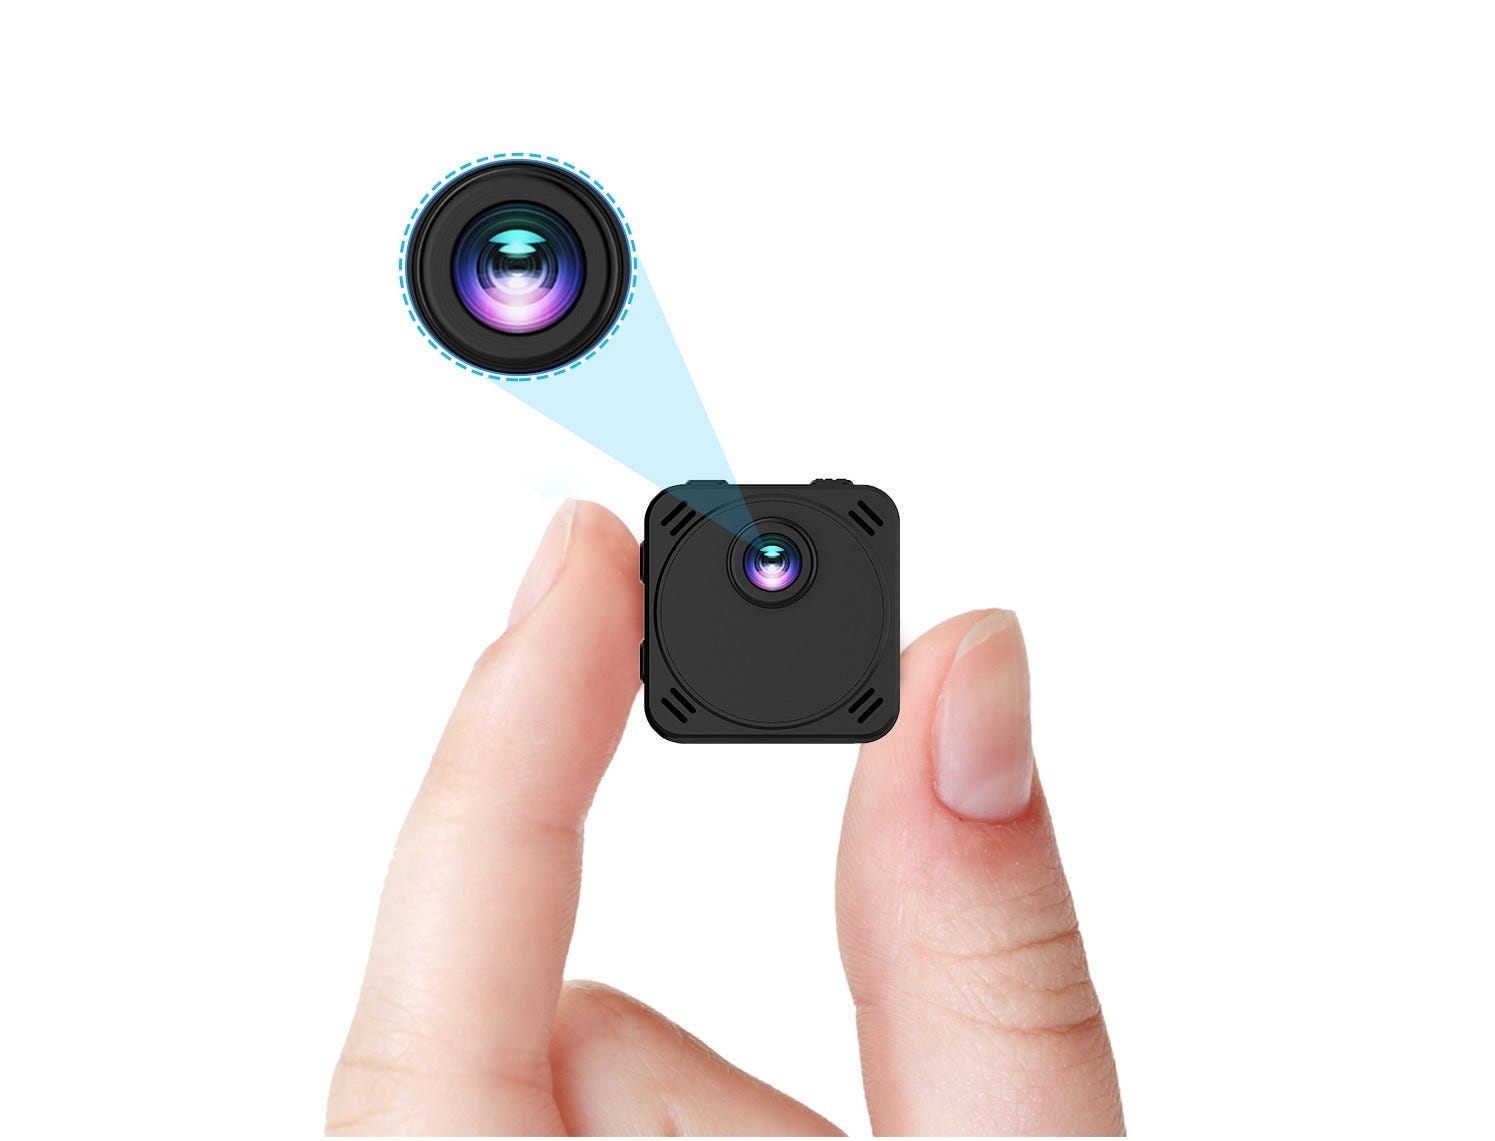 Mini caméra de surveillance infrarouge intelligente sans fil vision 170° HD  1080P WIFI et DV, jour/nuit + carte mémoire micro SD 128GO